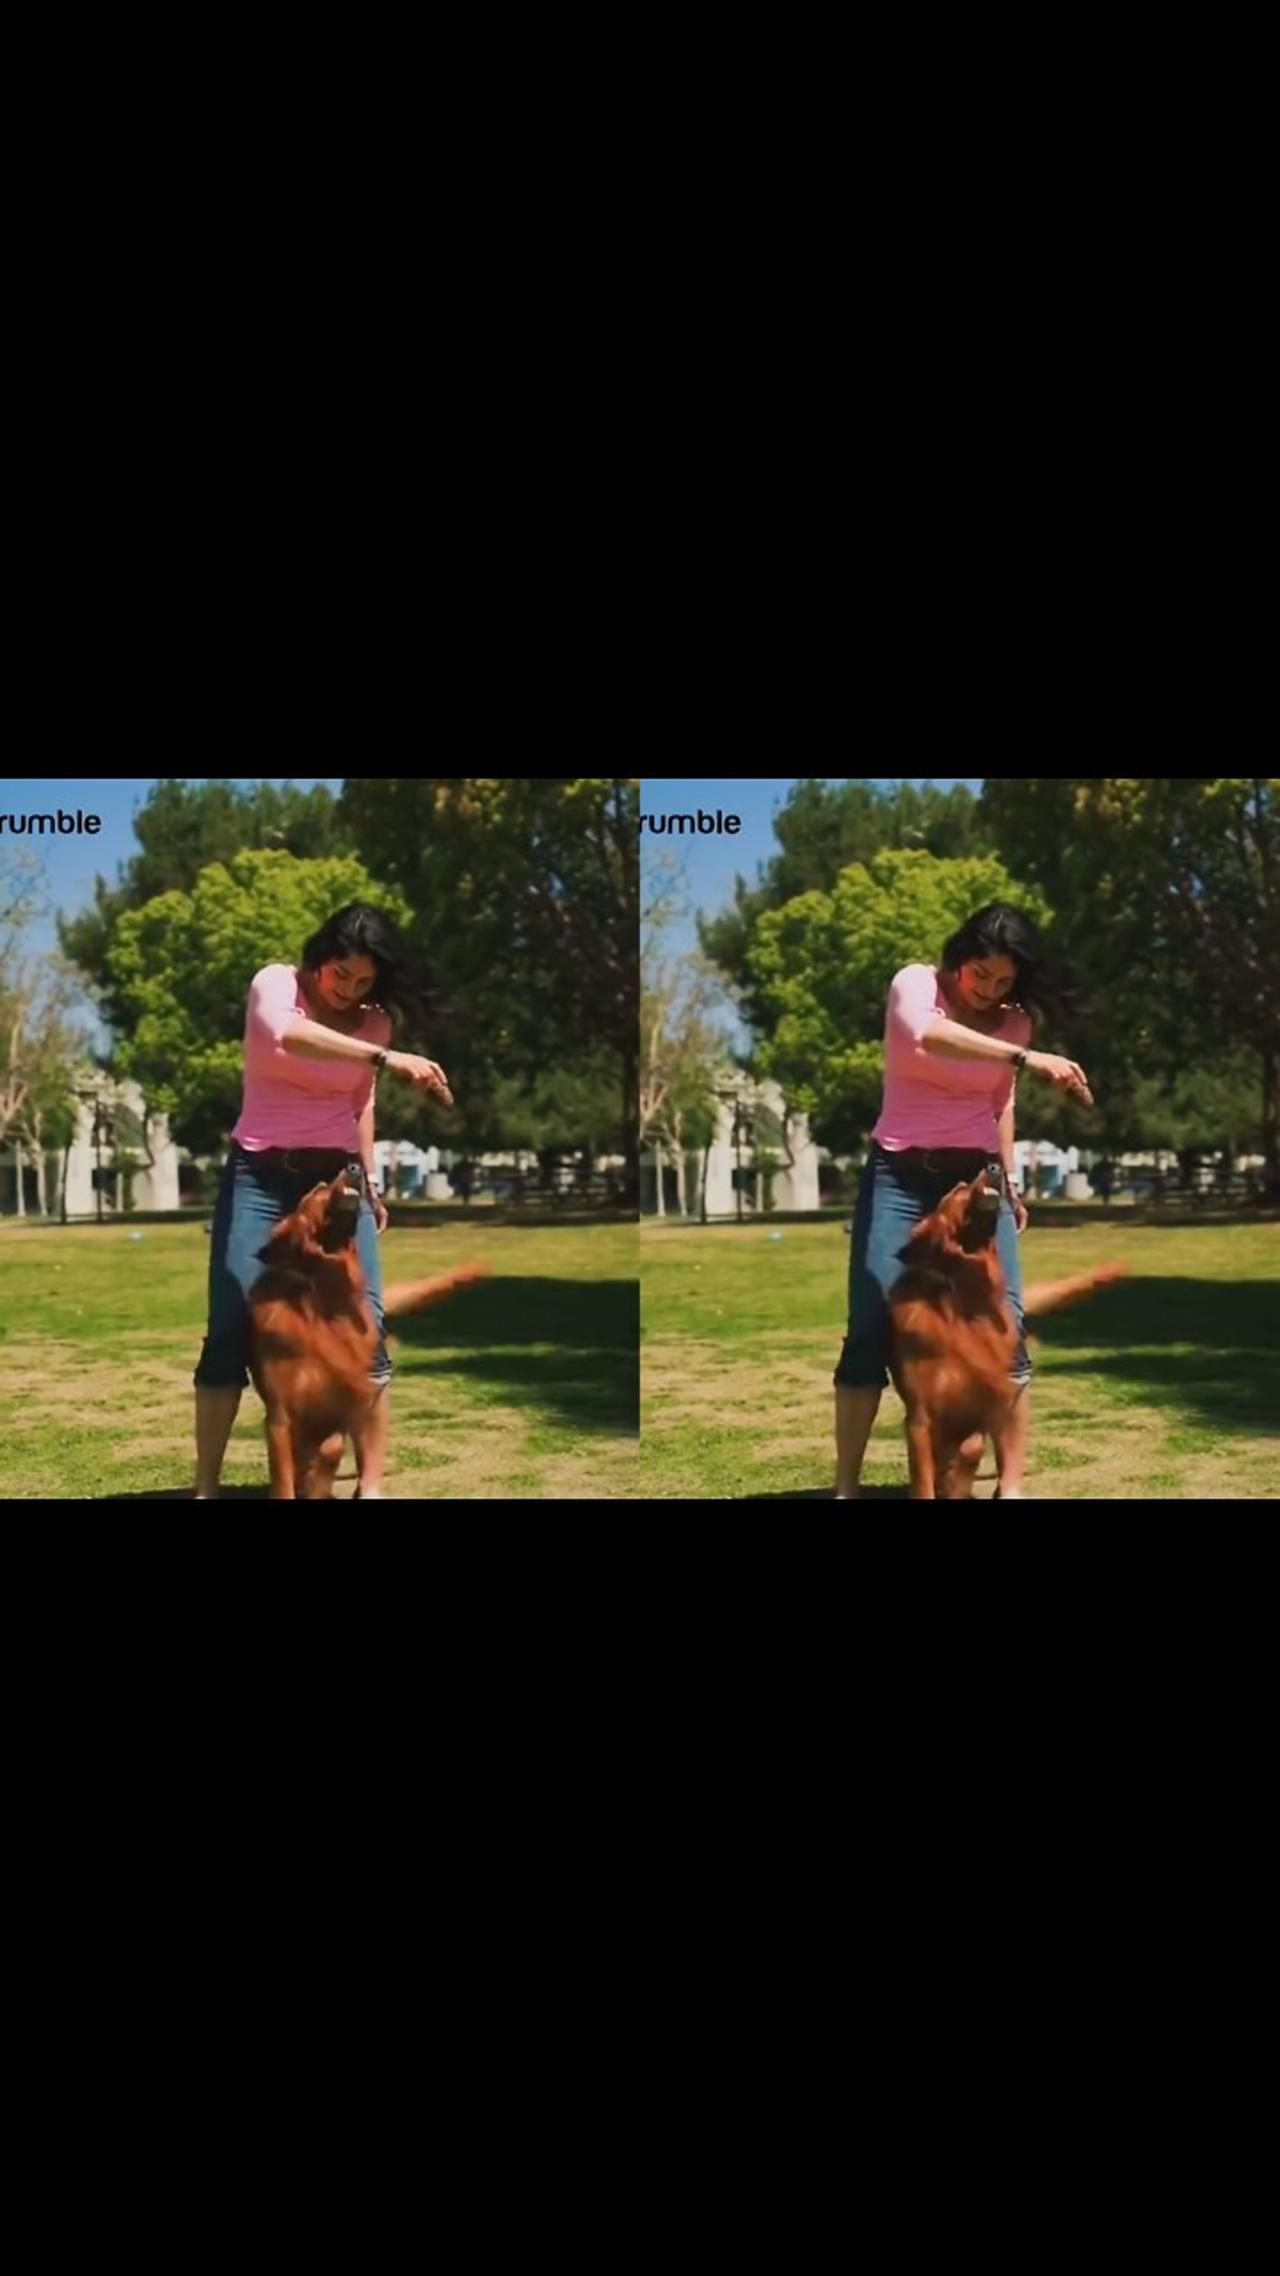 Basic Rules for Dog Training Cutepuppy